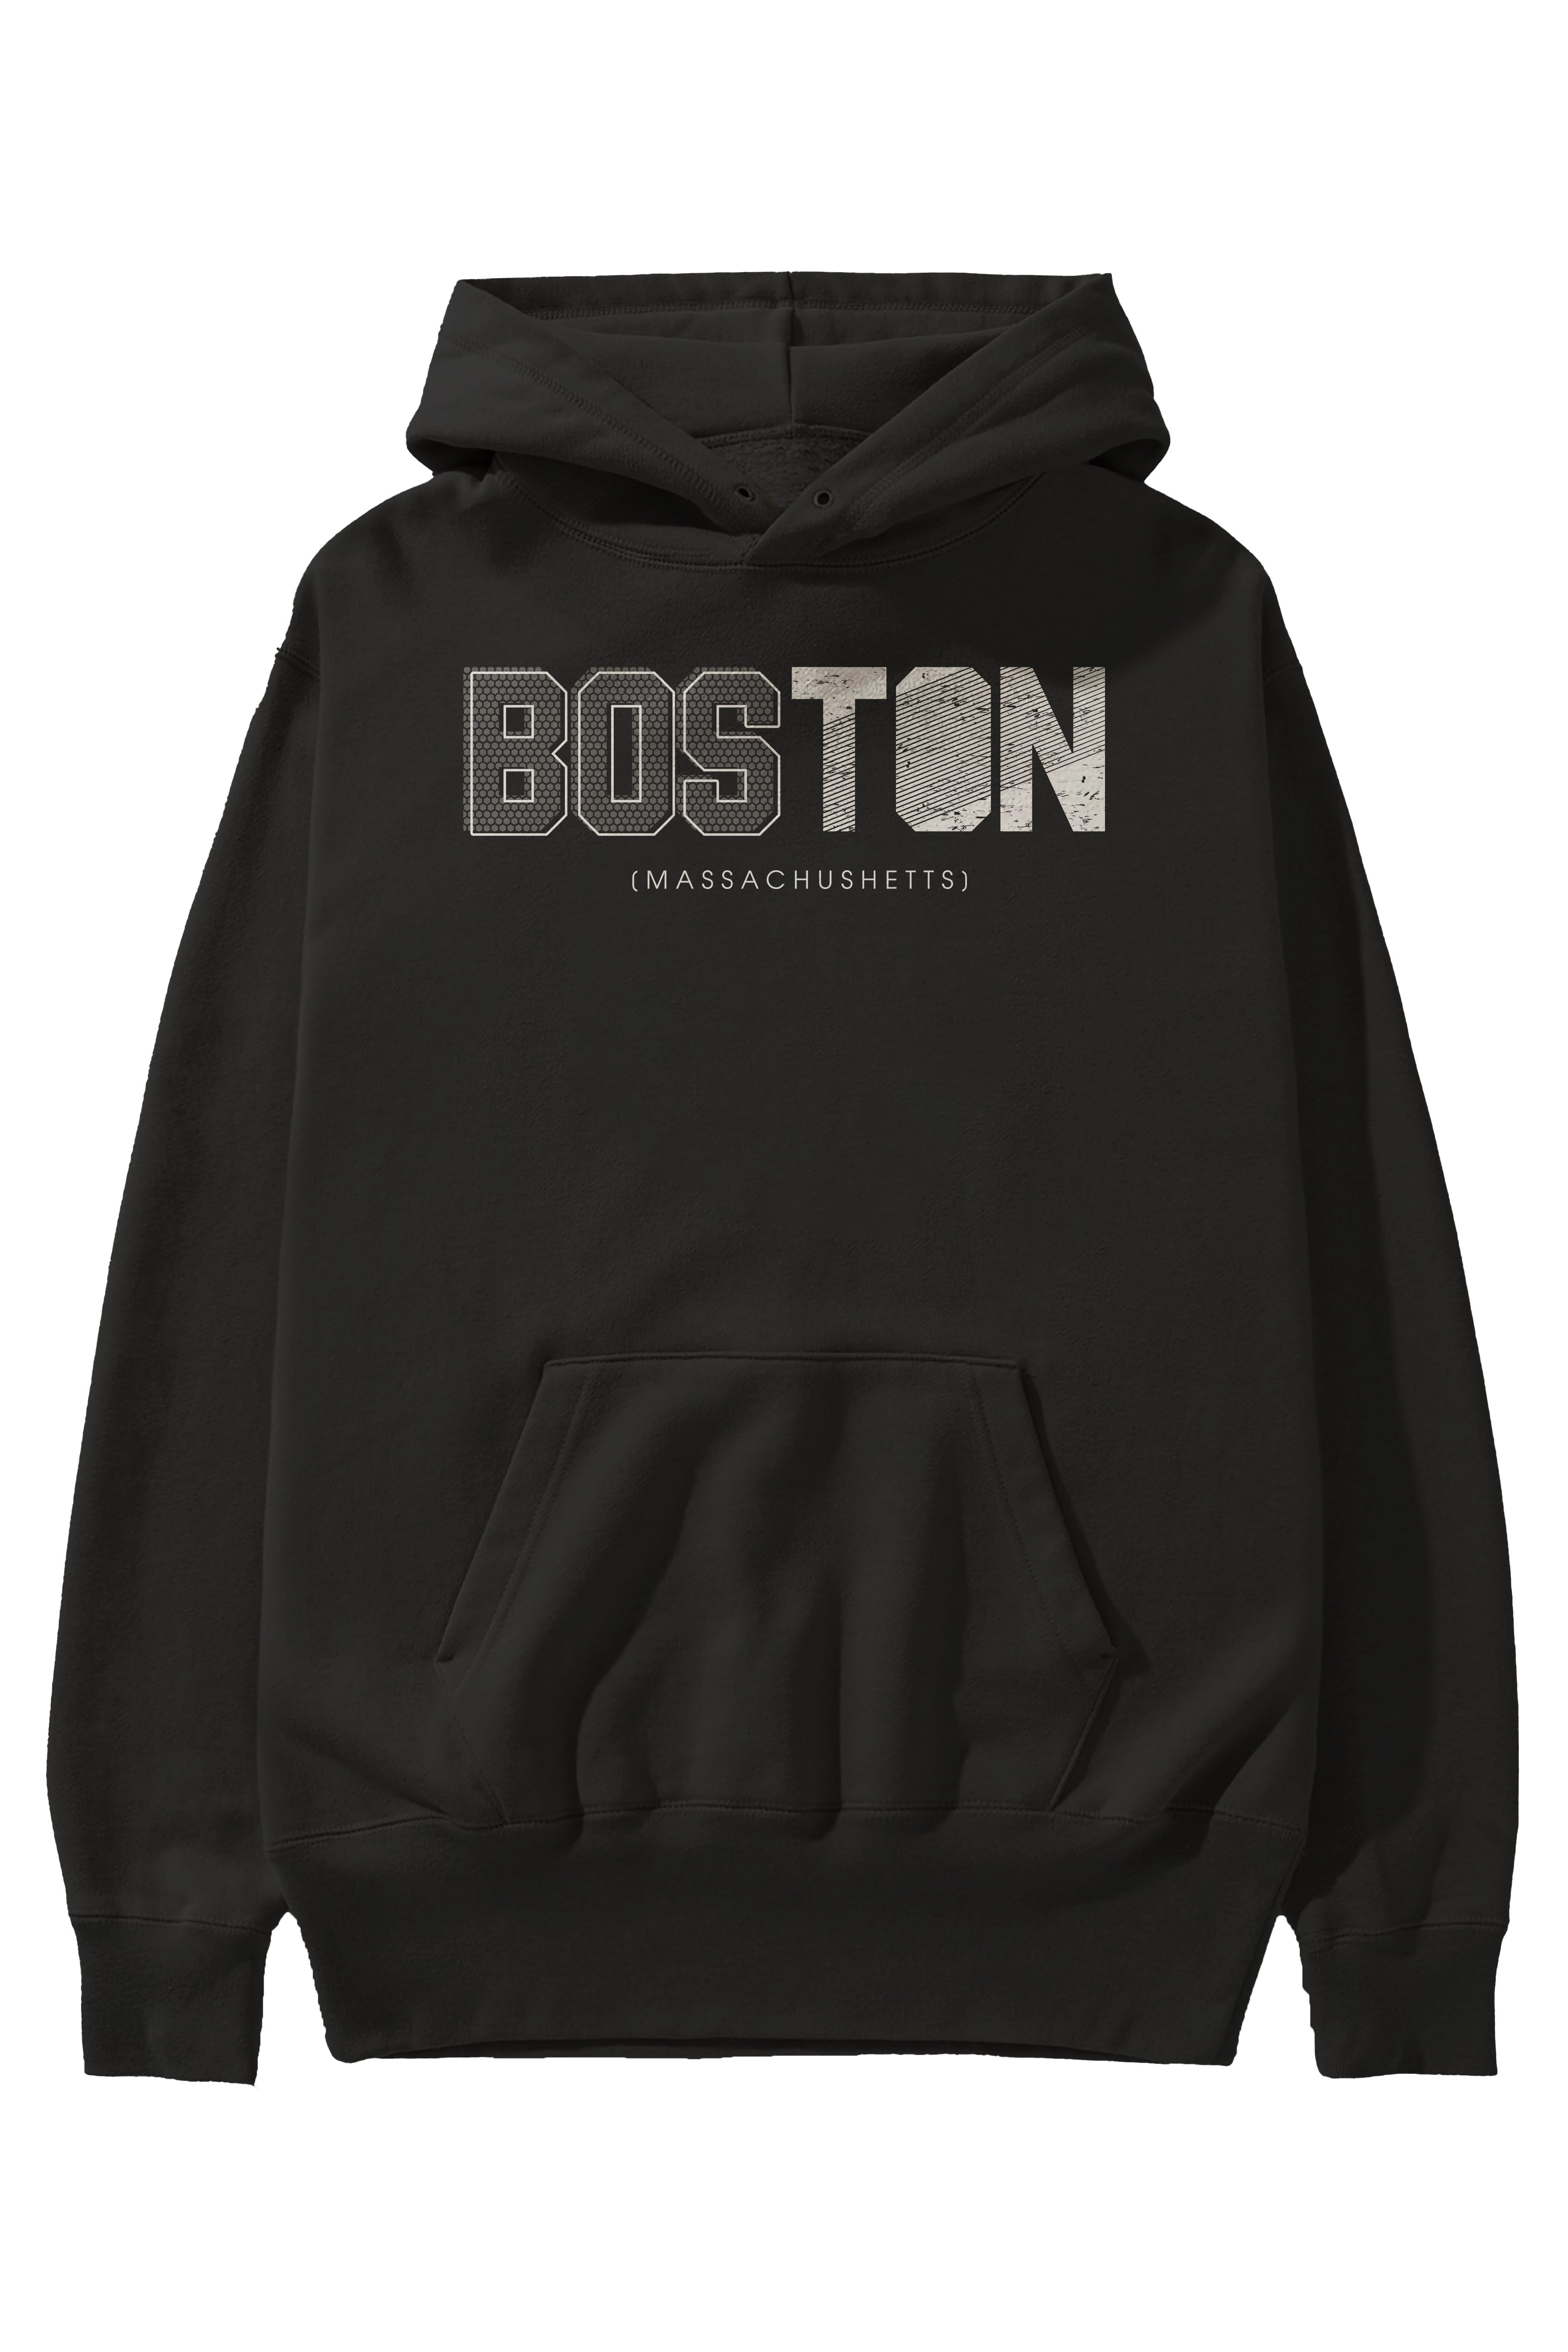 Boston Ön Baskılı Oversize Hoodie Kapüşonlu Sweatshirt Erkek Kadın Unisex